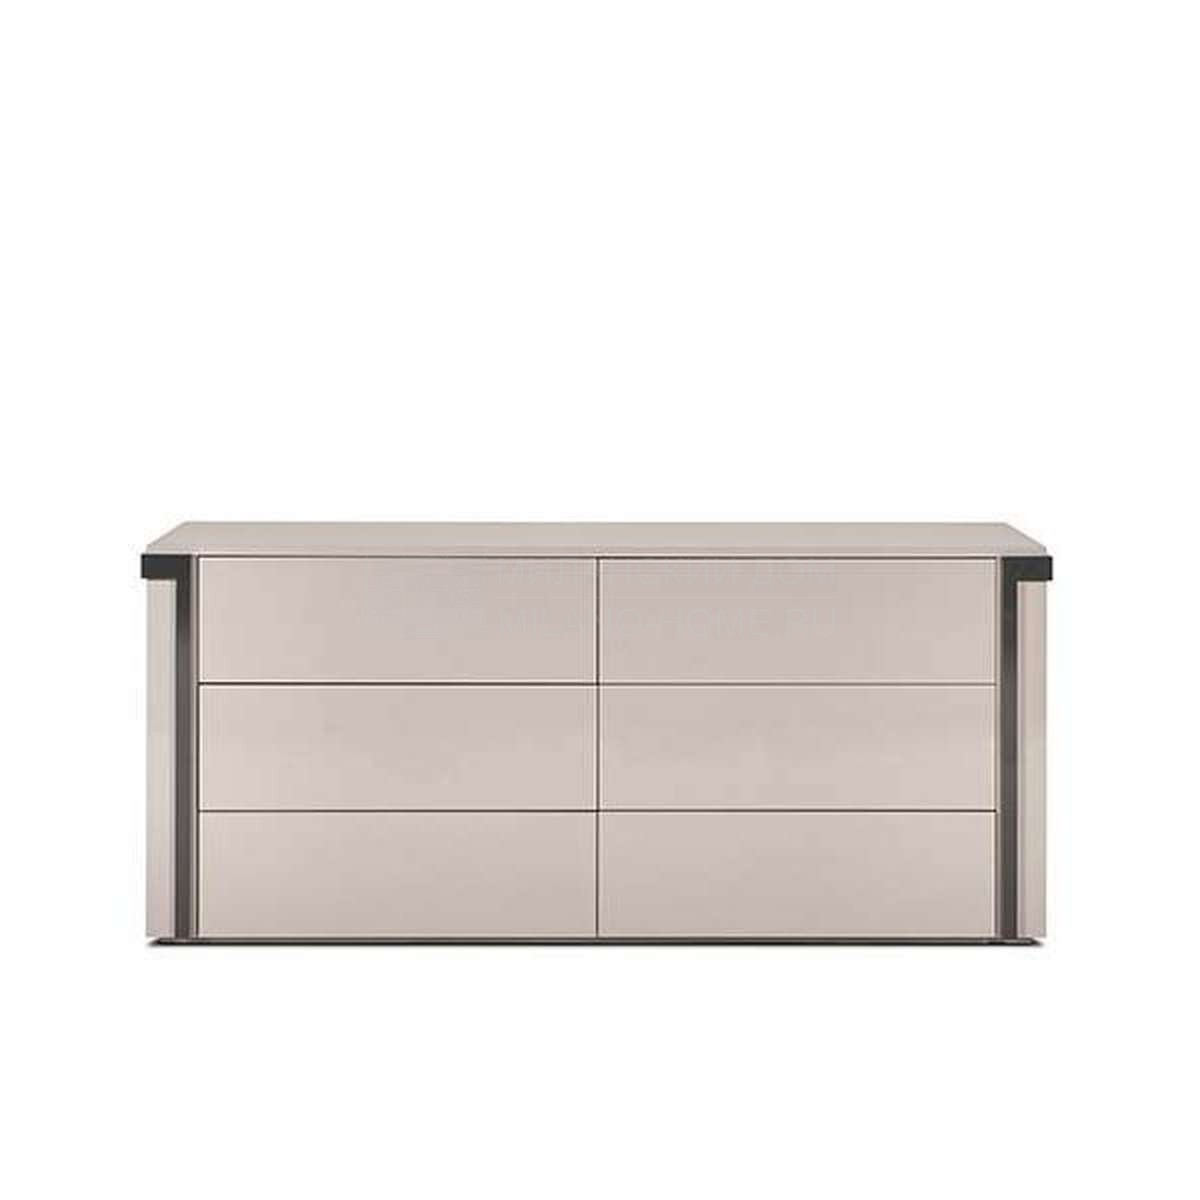 Комод Avenue chest of drawers из Италии фабрики FENDI Casa